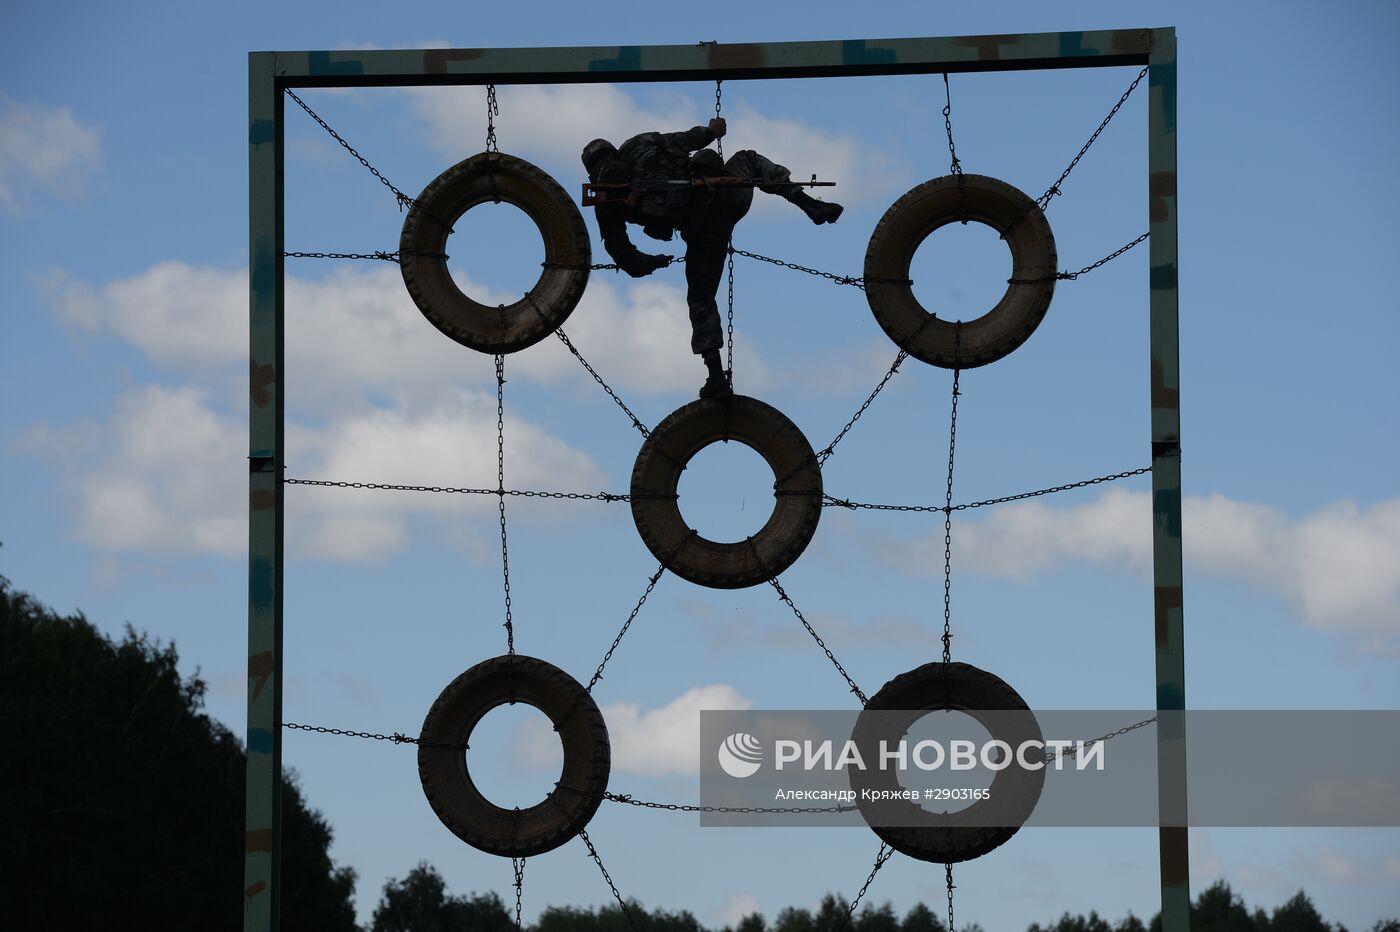 Третий этап конкурса "Отличники войсковой разведки" в Новосибирске